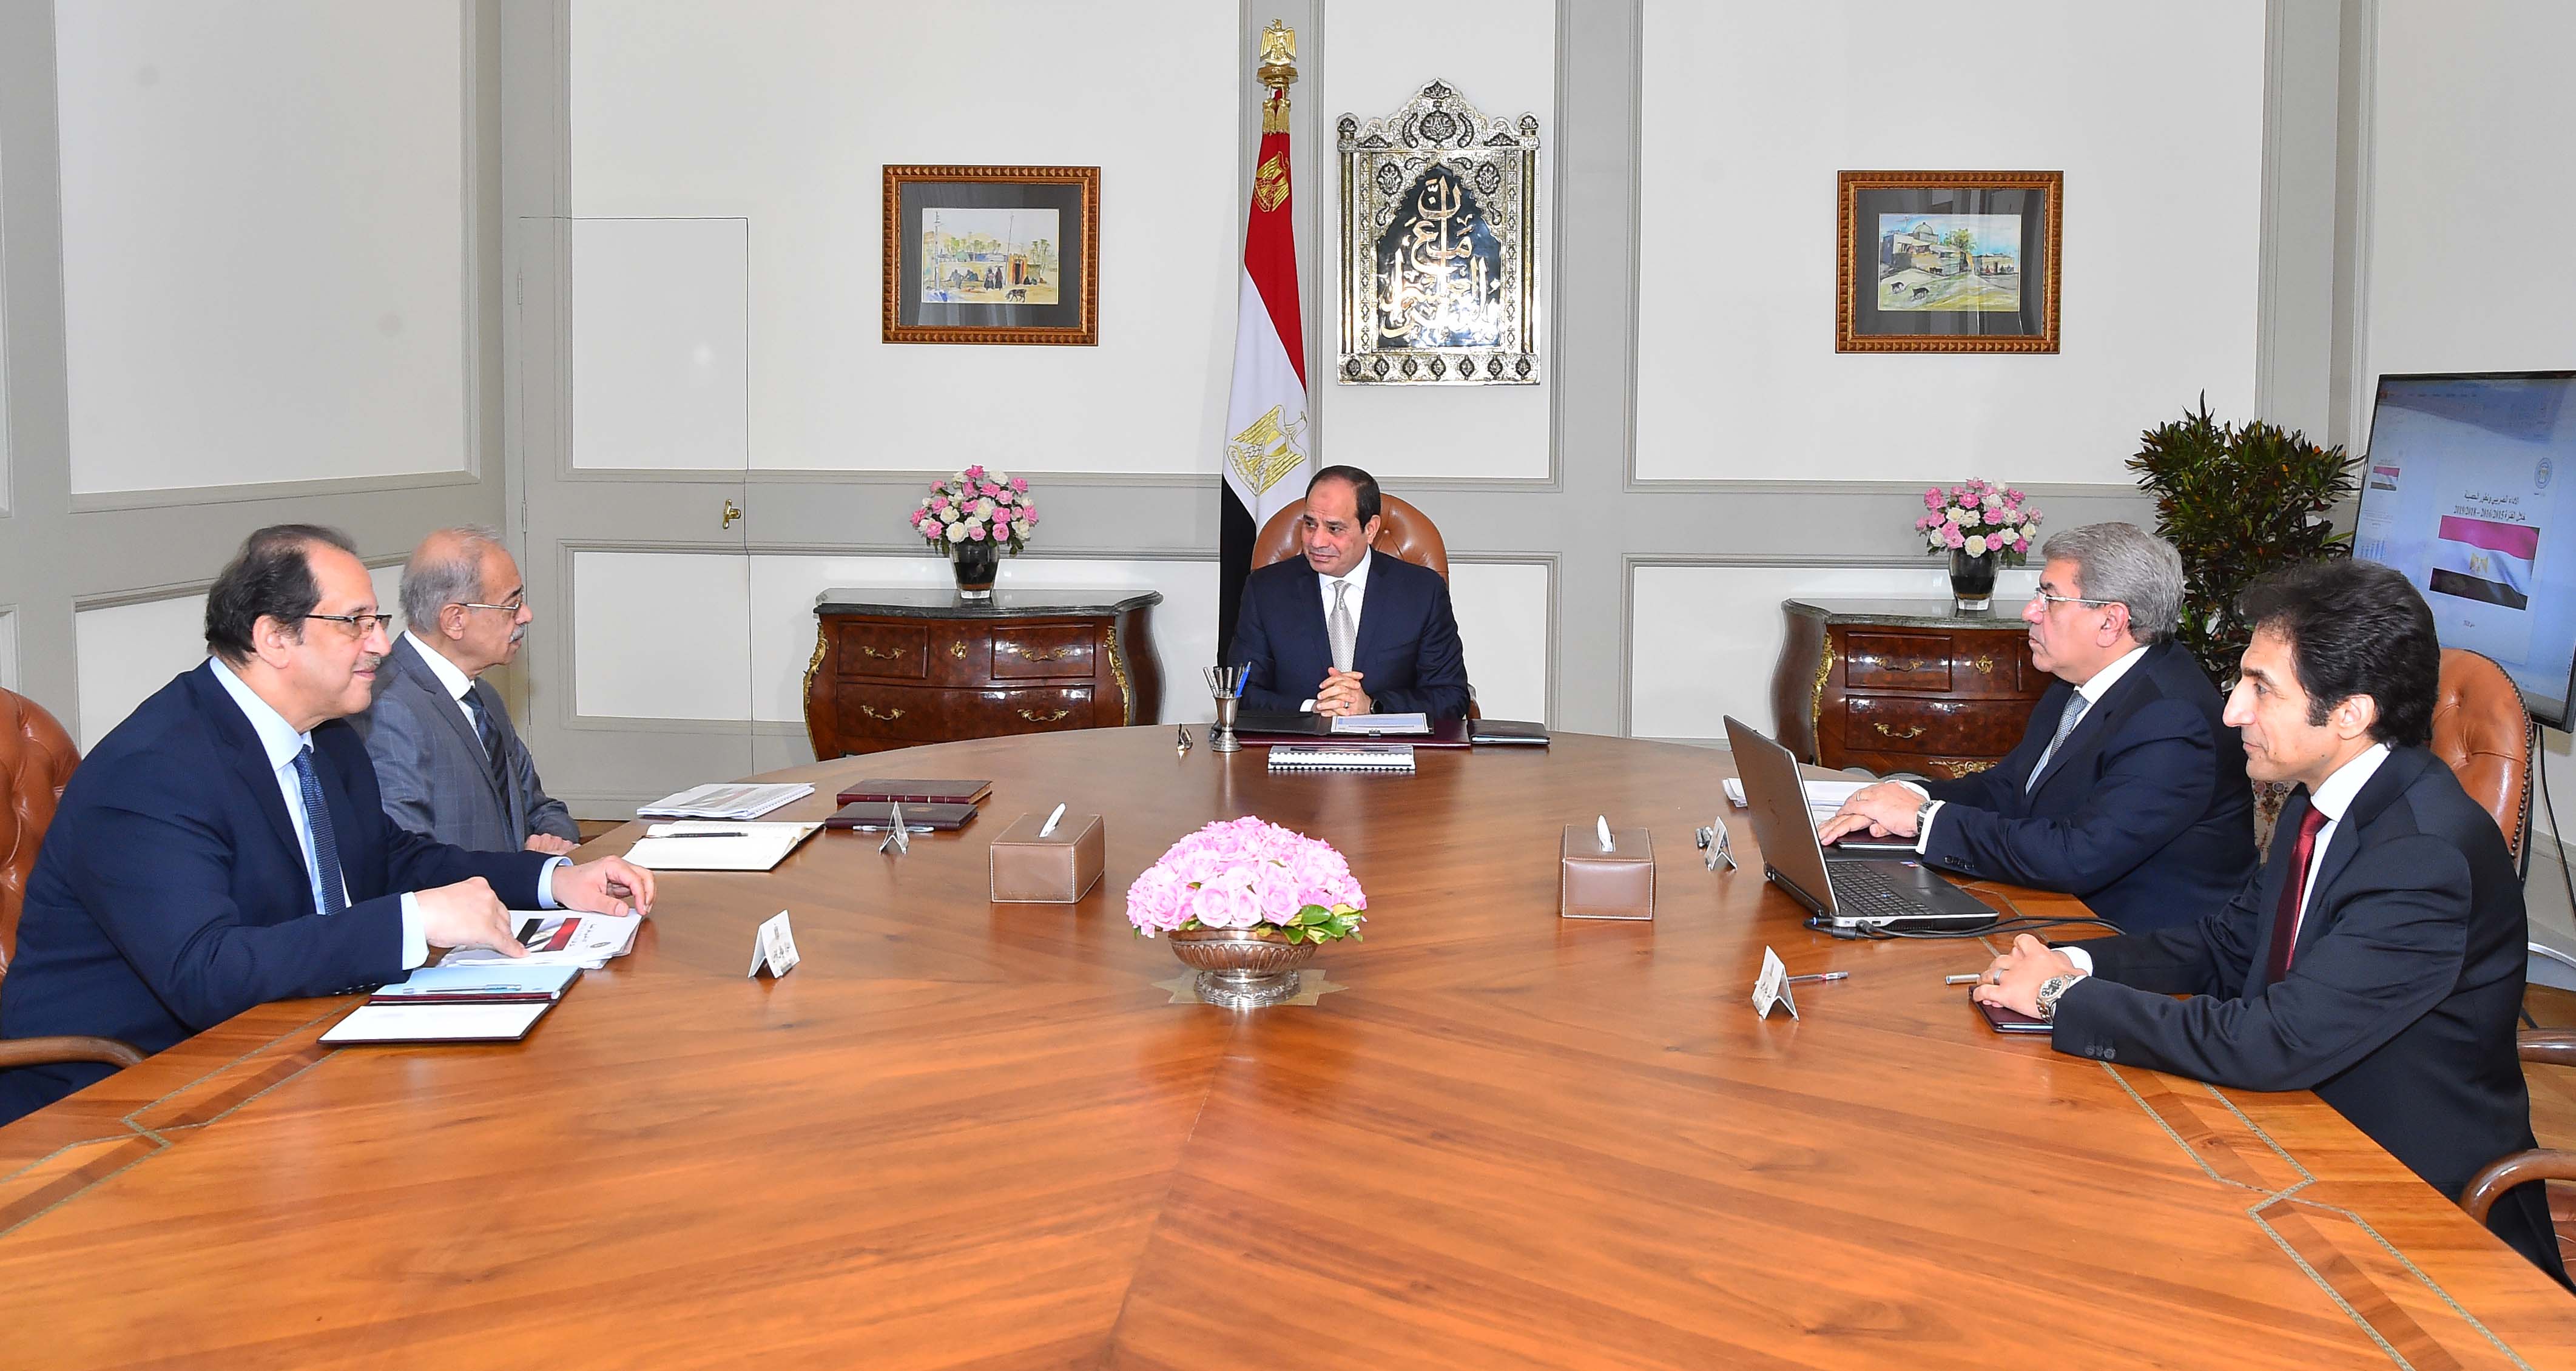   الرئيس يجتمع مع شريف إسماعيل و وزير المالية